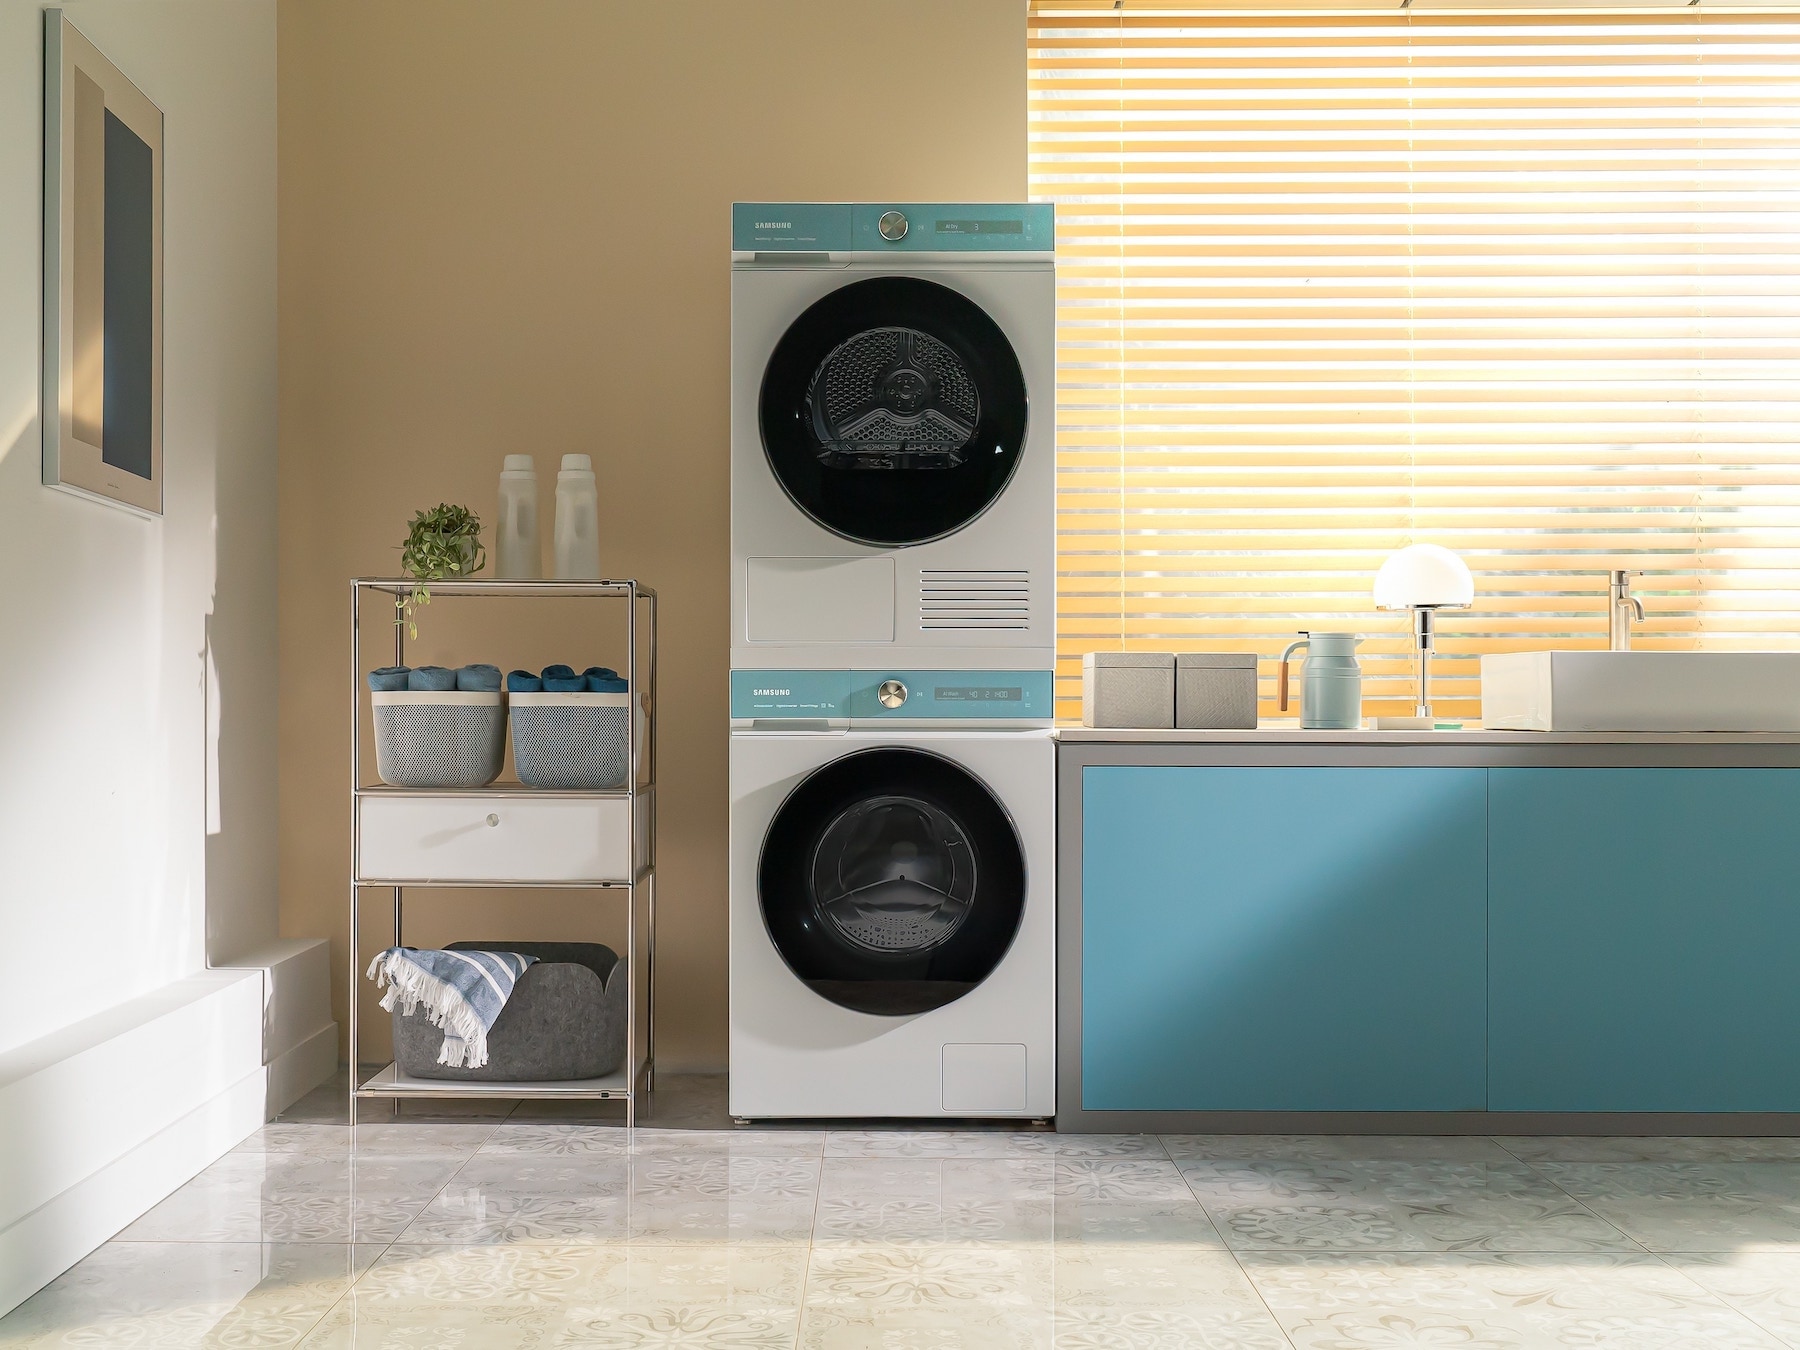 Máy giặt sấy samsung bespoke ai 14kg được thiết kế theo phong cách tối giản.